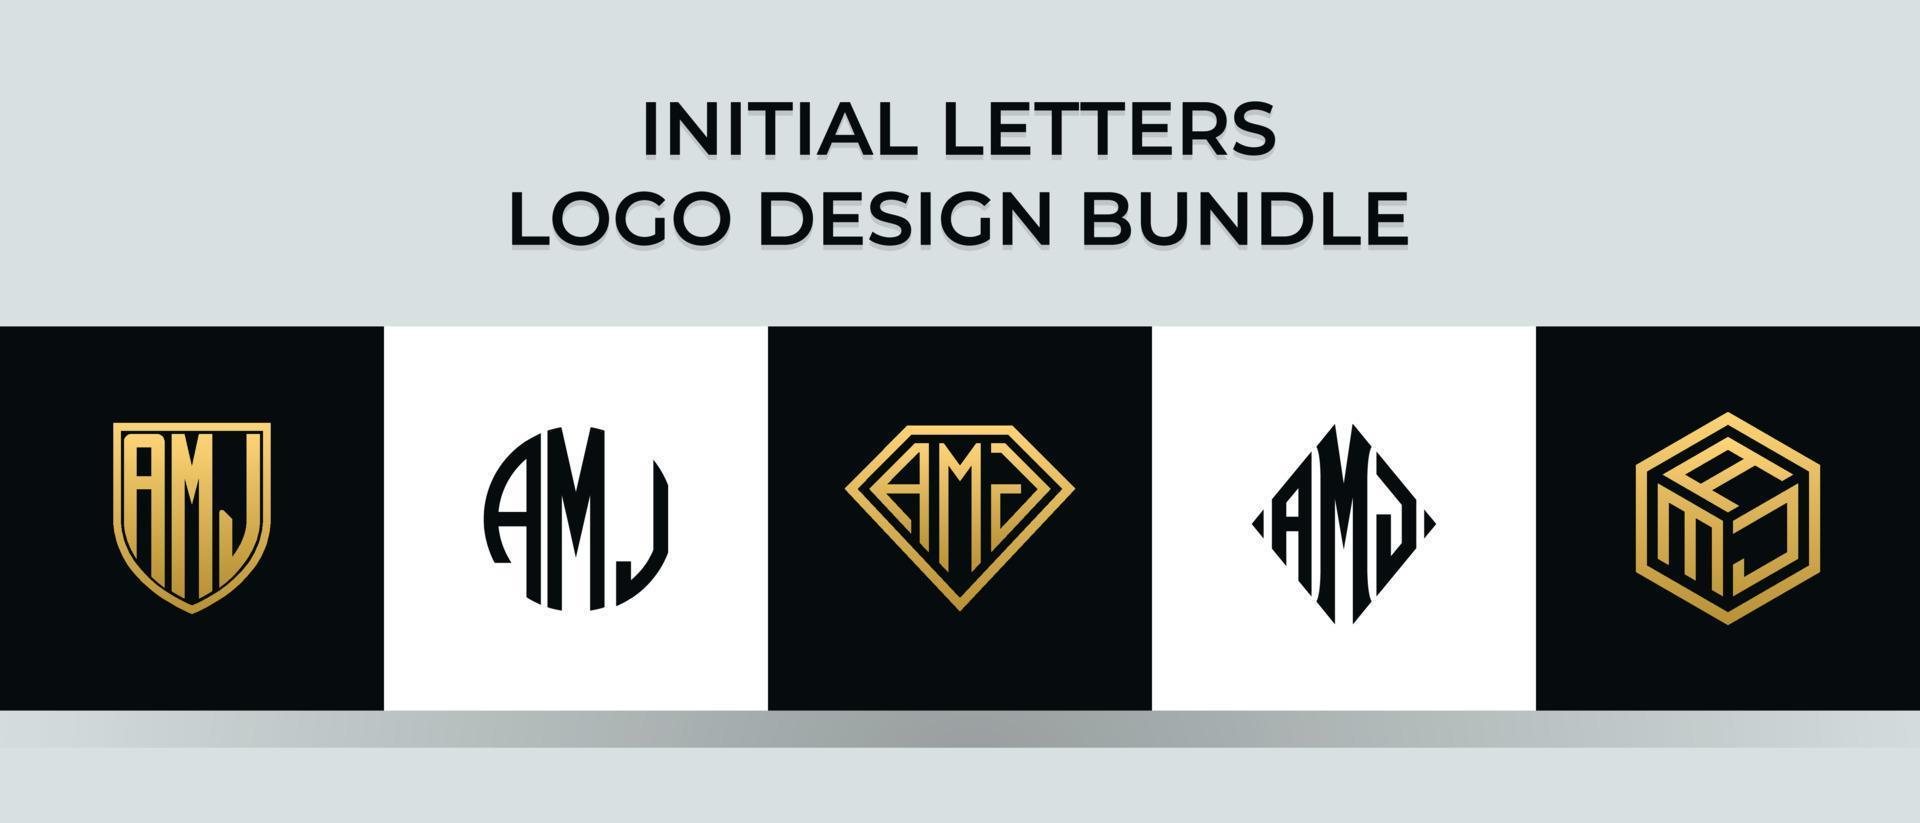 lettere iniziali amj logo design bundle vettore